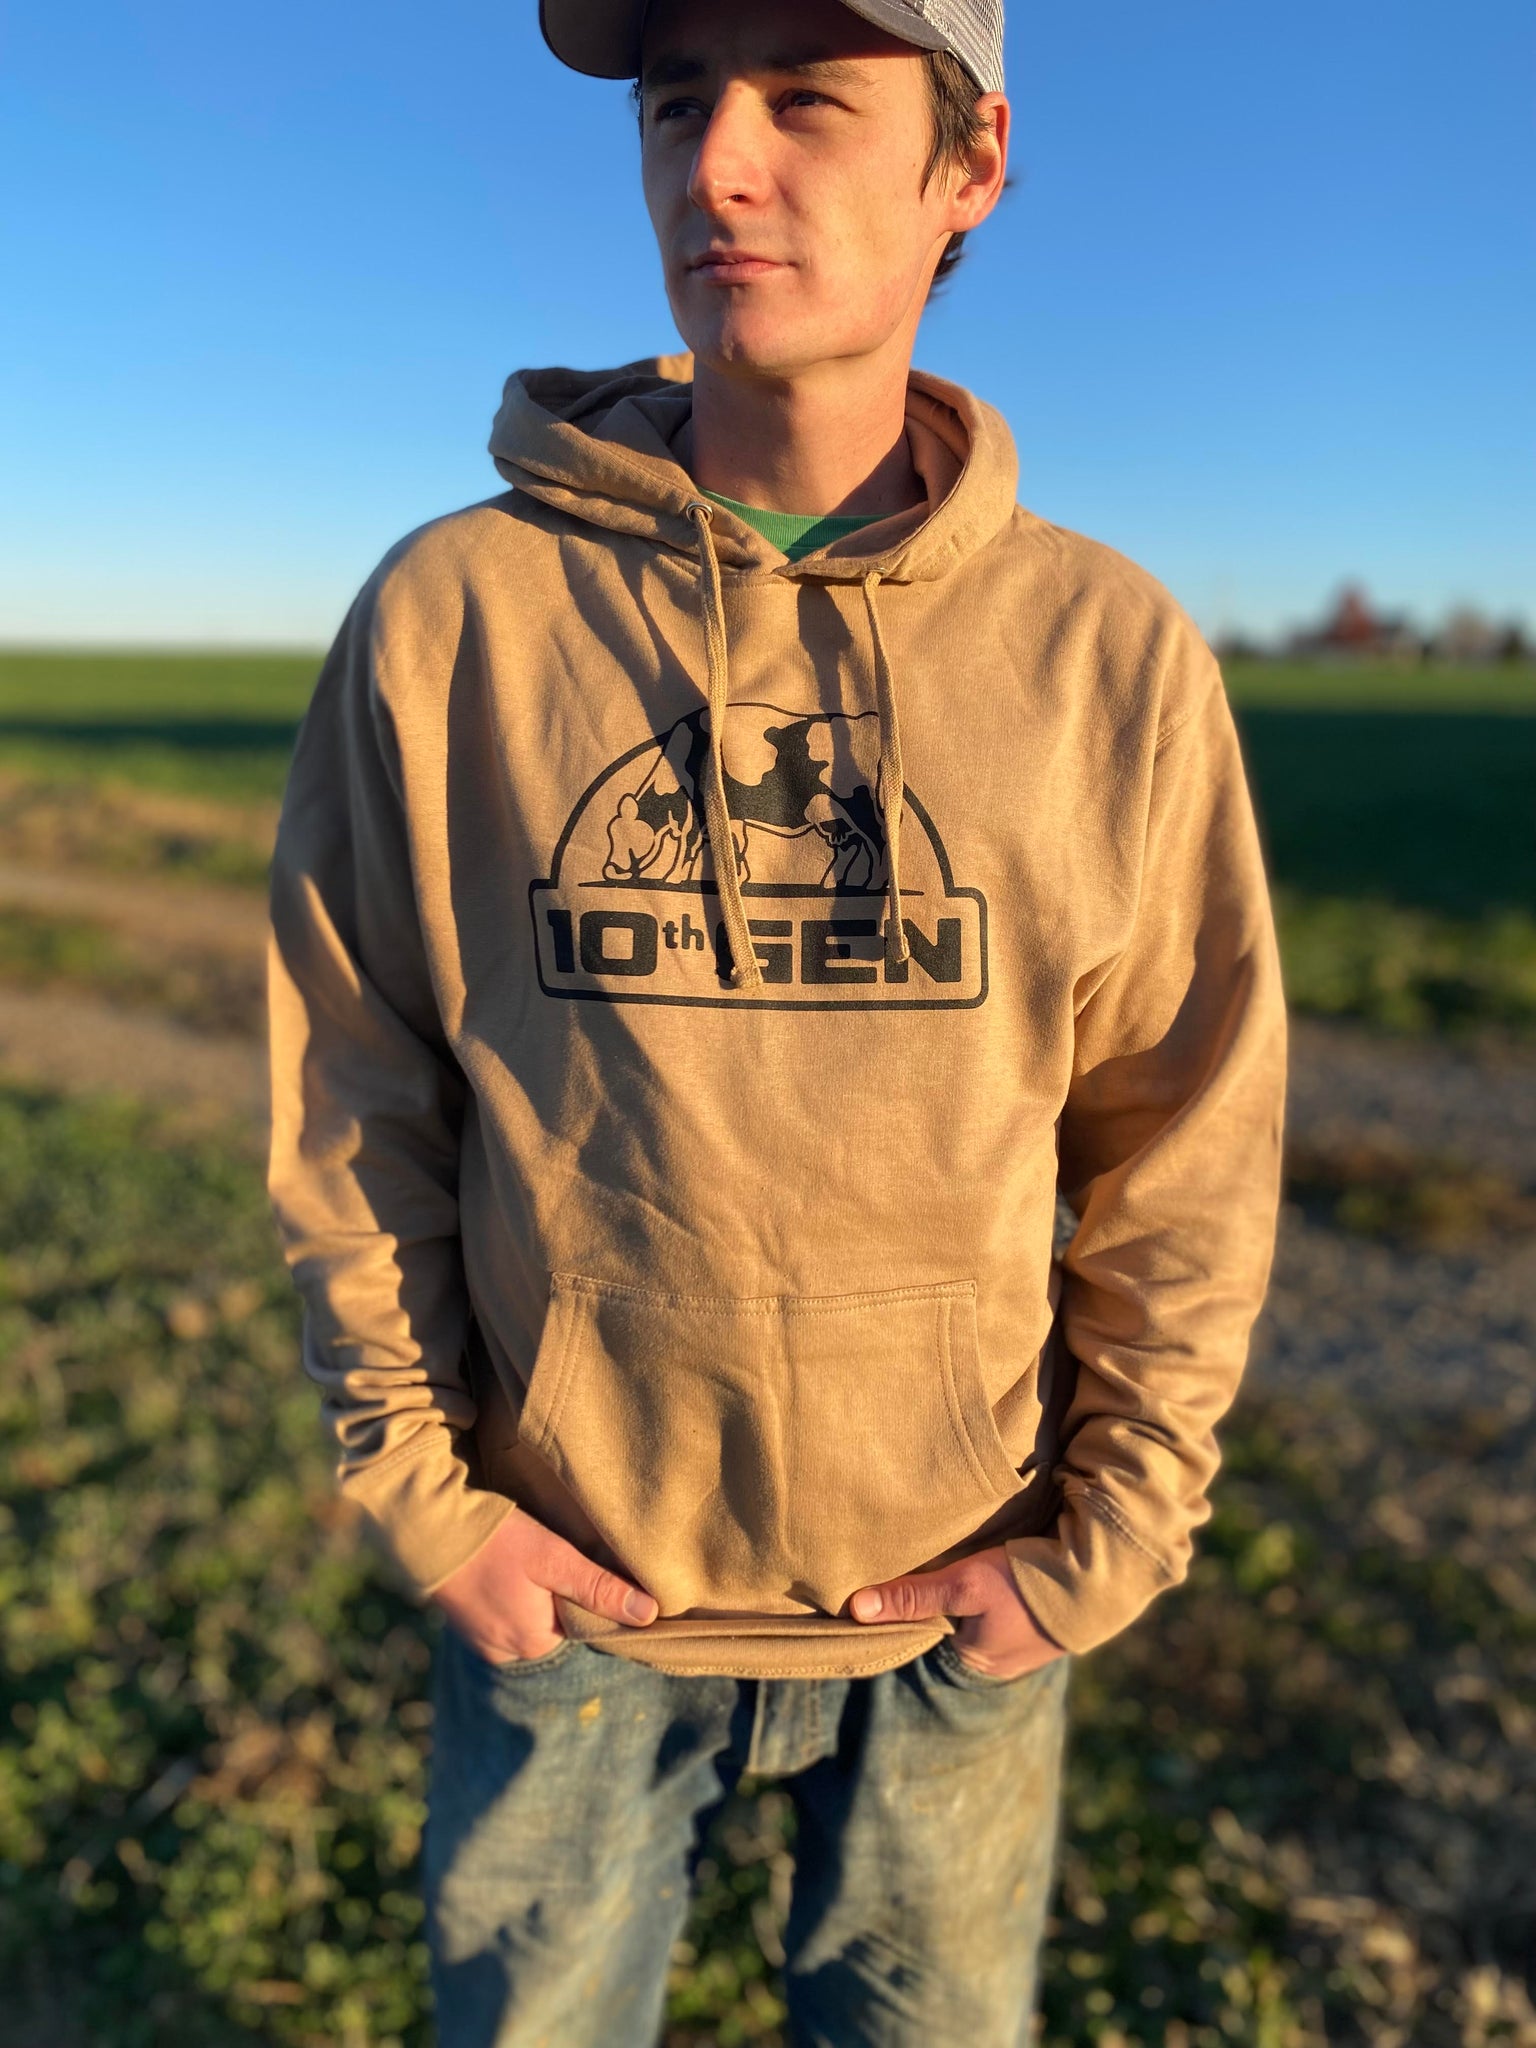 10th Gen Sweatshirt – 10th Generation Dairyman